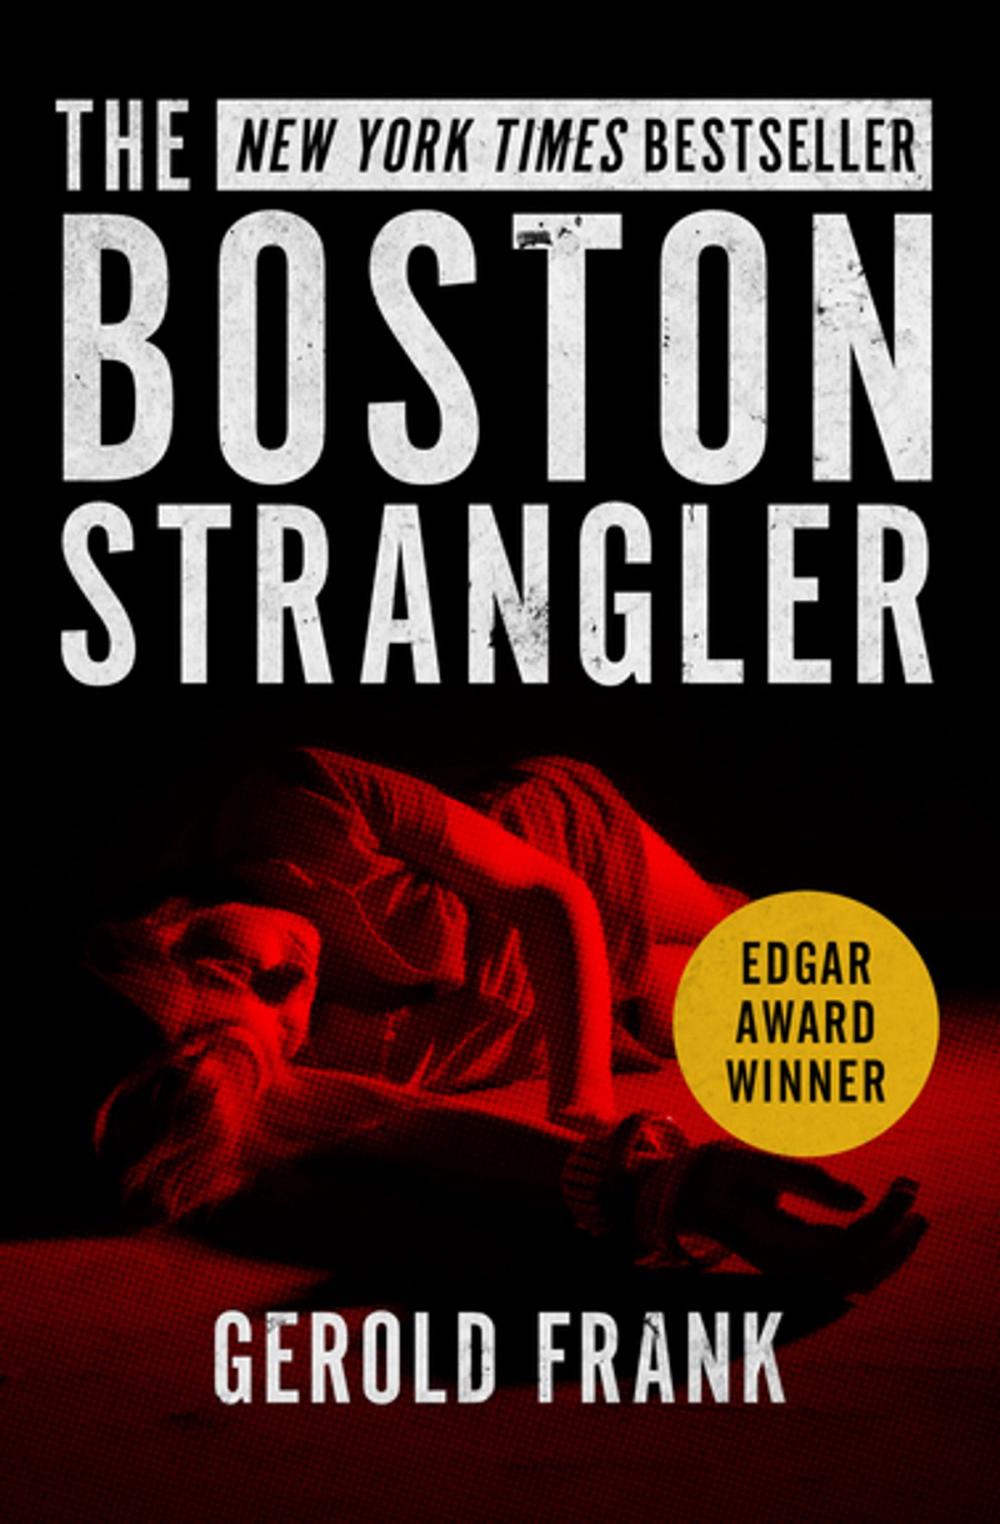 Big bigCover of The Boston Strangler